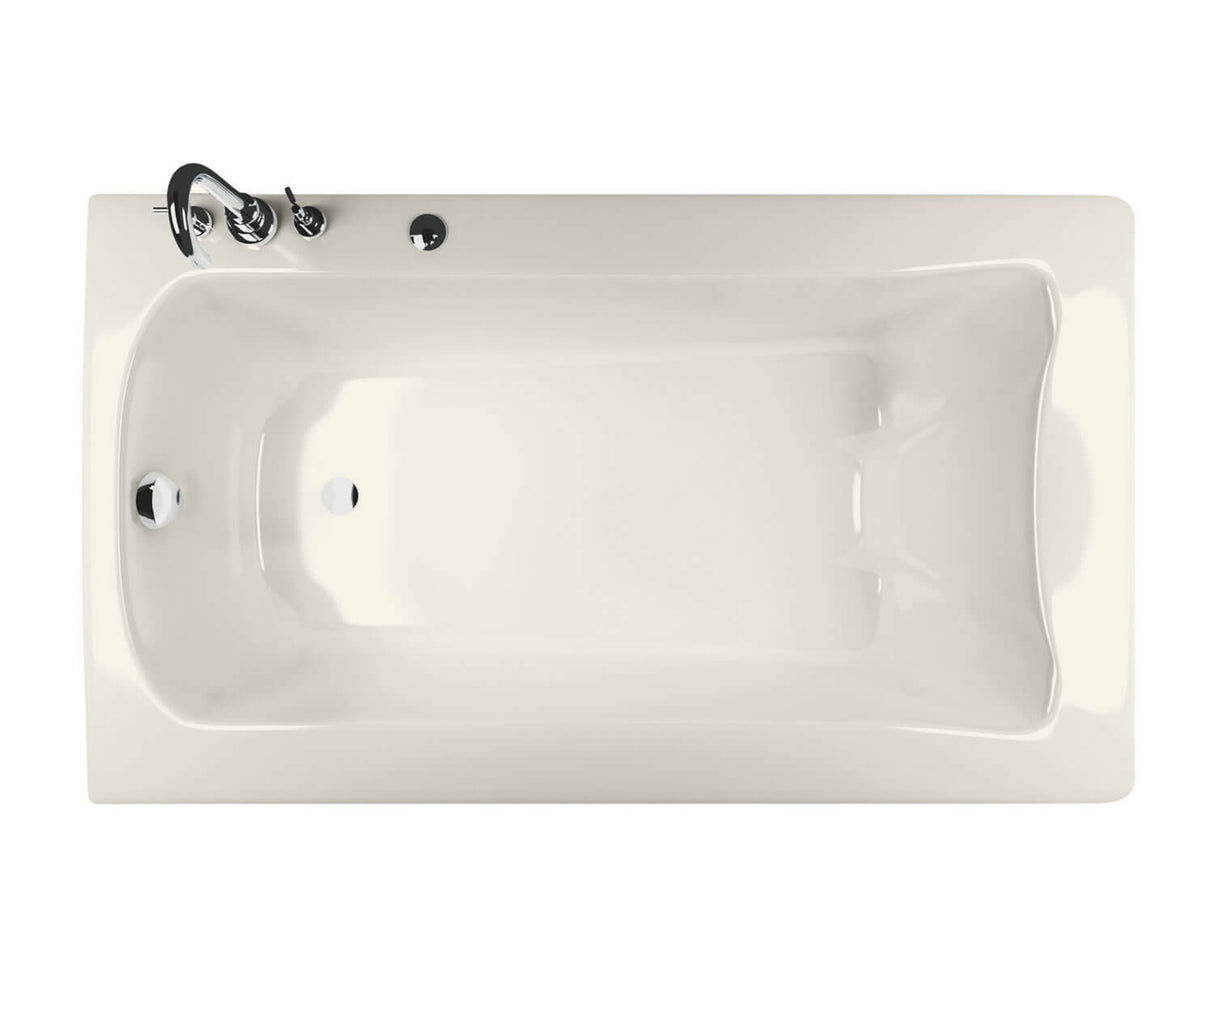 MAAX 105310-L-055-007 Release 6032 Acrylic Drop-in Left-Hand Drain Aerofeel Bathtub in Biscuit